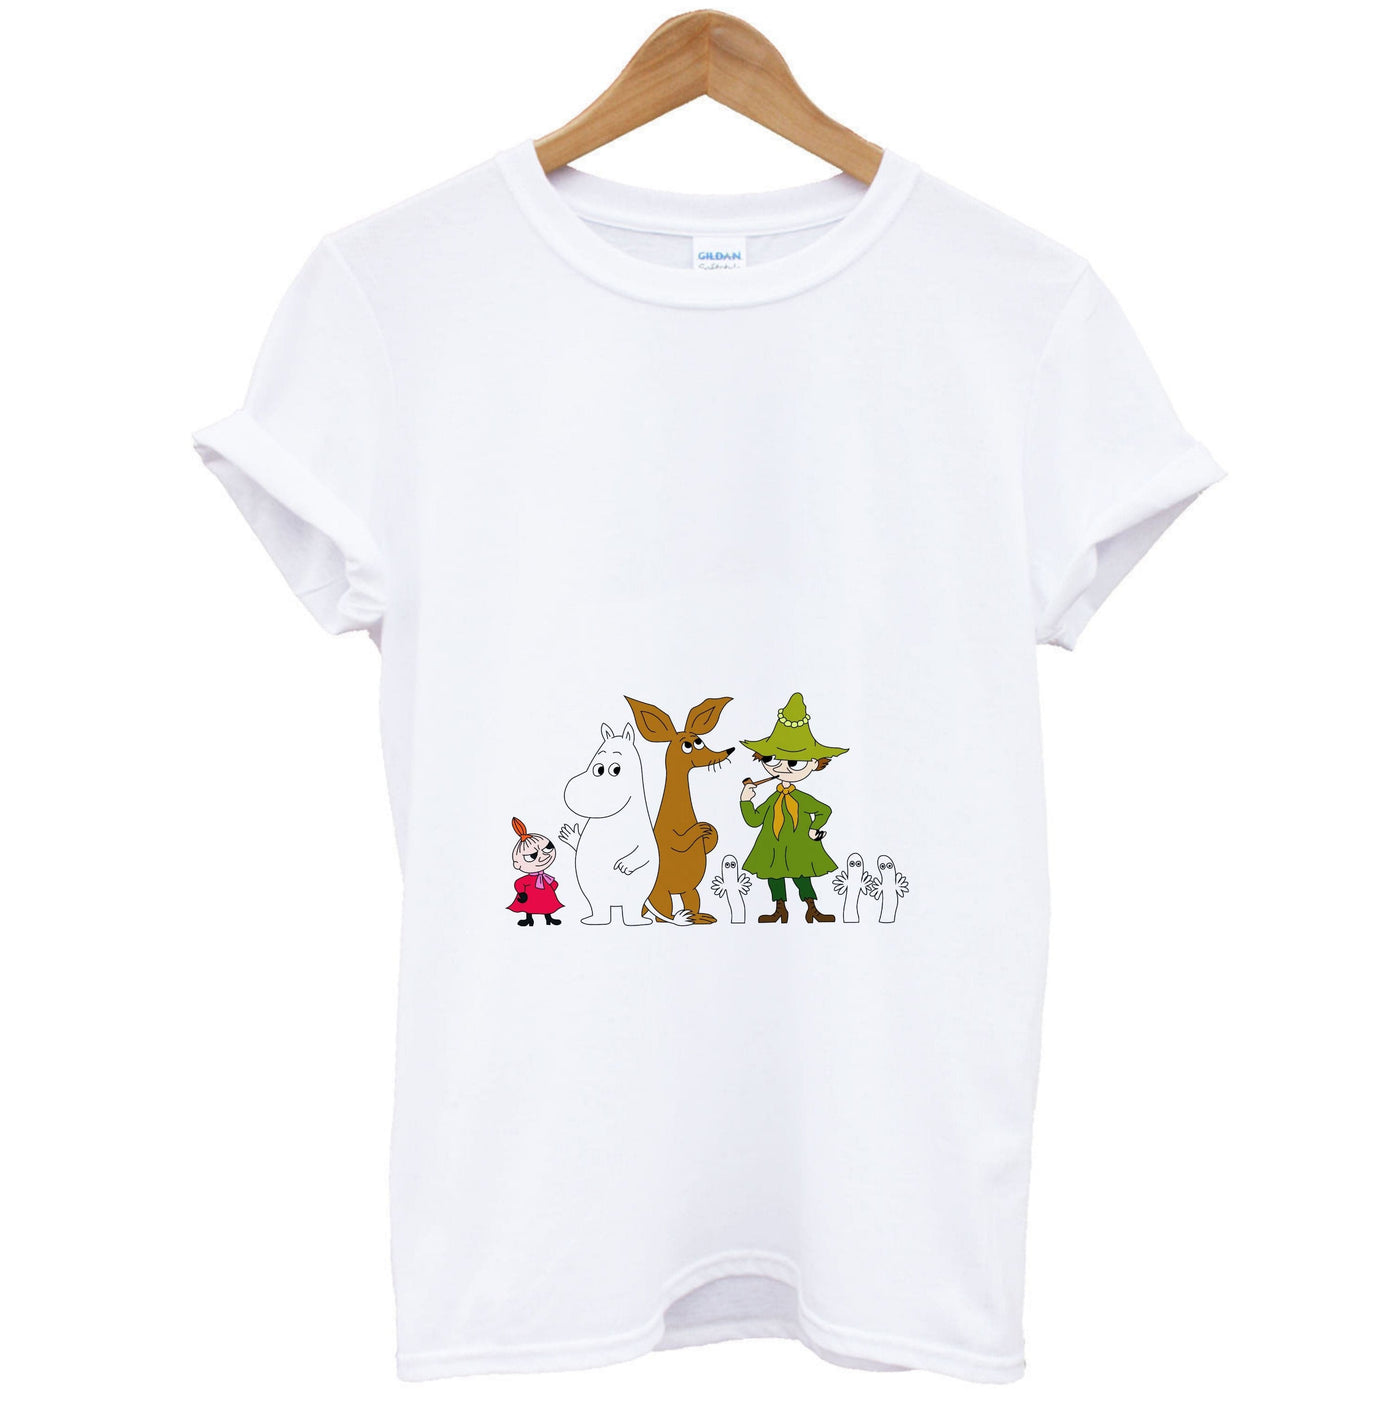 Moomin Characters T-Shirt